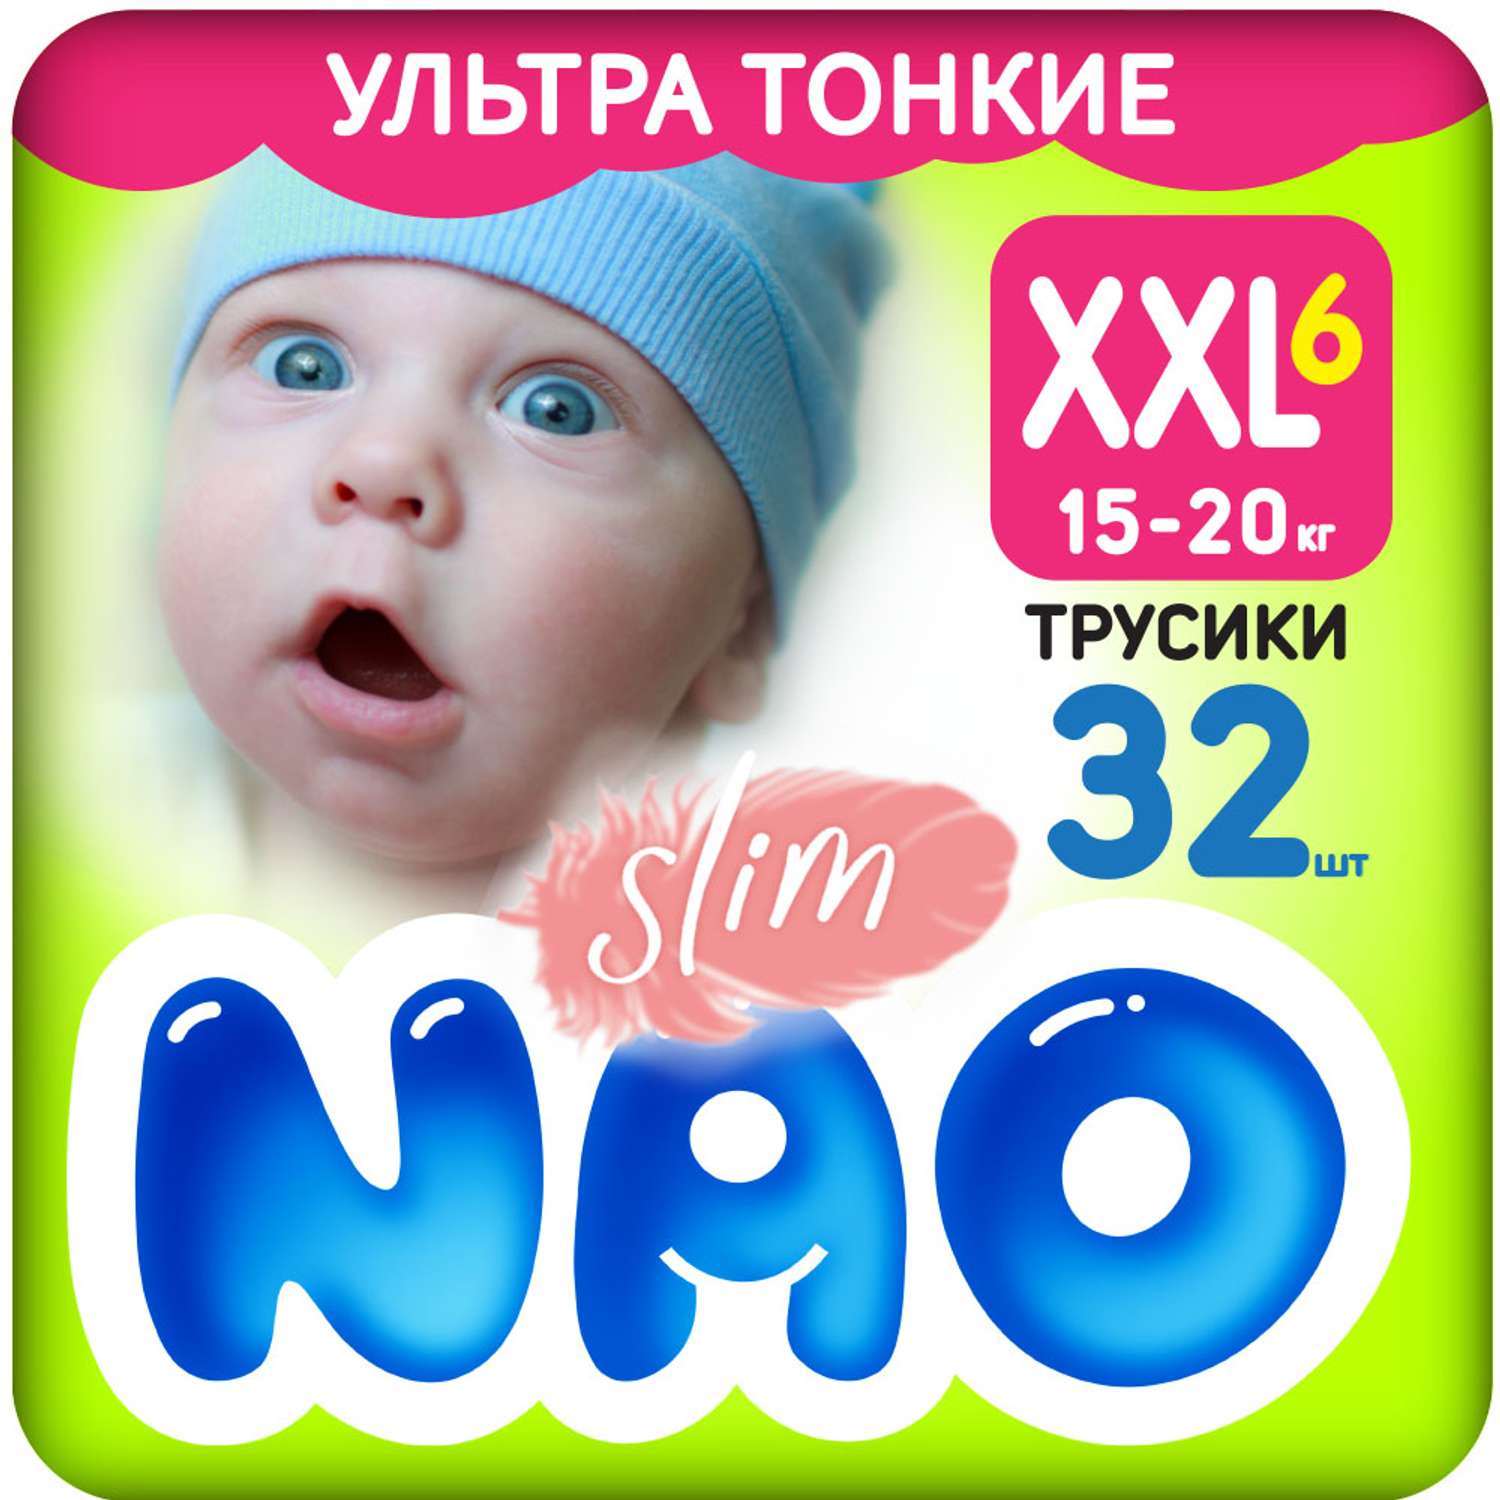 Подгузники-трусики NAO Slim 6 размер XXL японские памперсы для мальчиков девочек детей от 15-20 кг 32 шт - фото 1